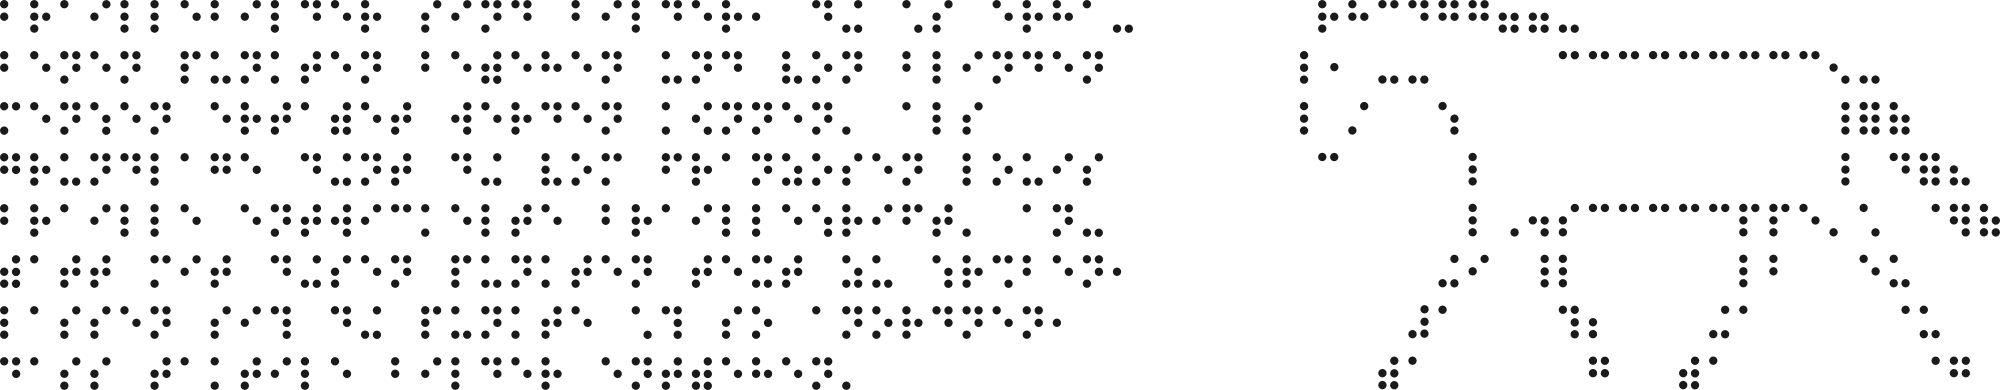 Text mit Brailleschrift und Braillebild Pferd